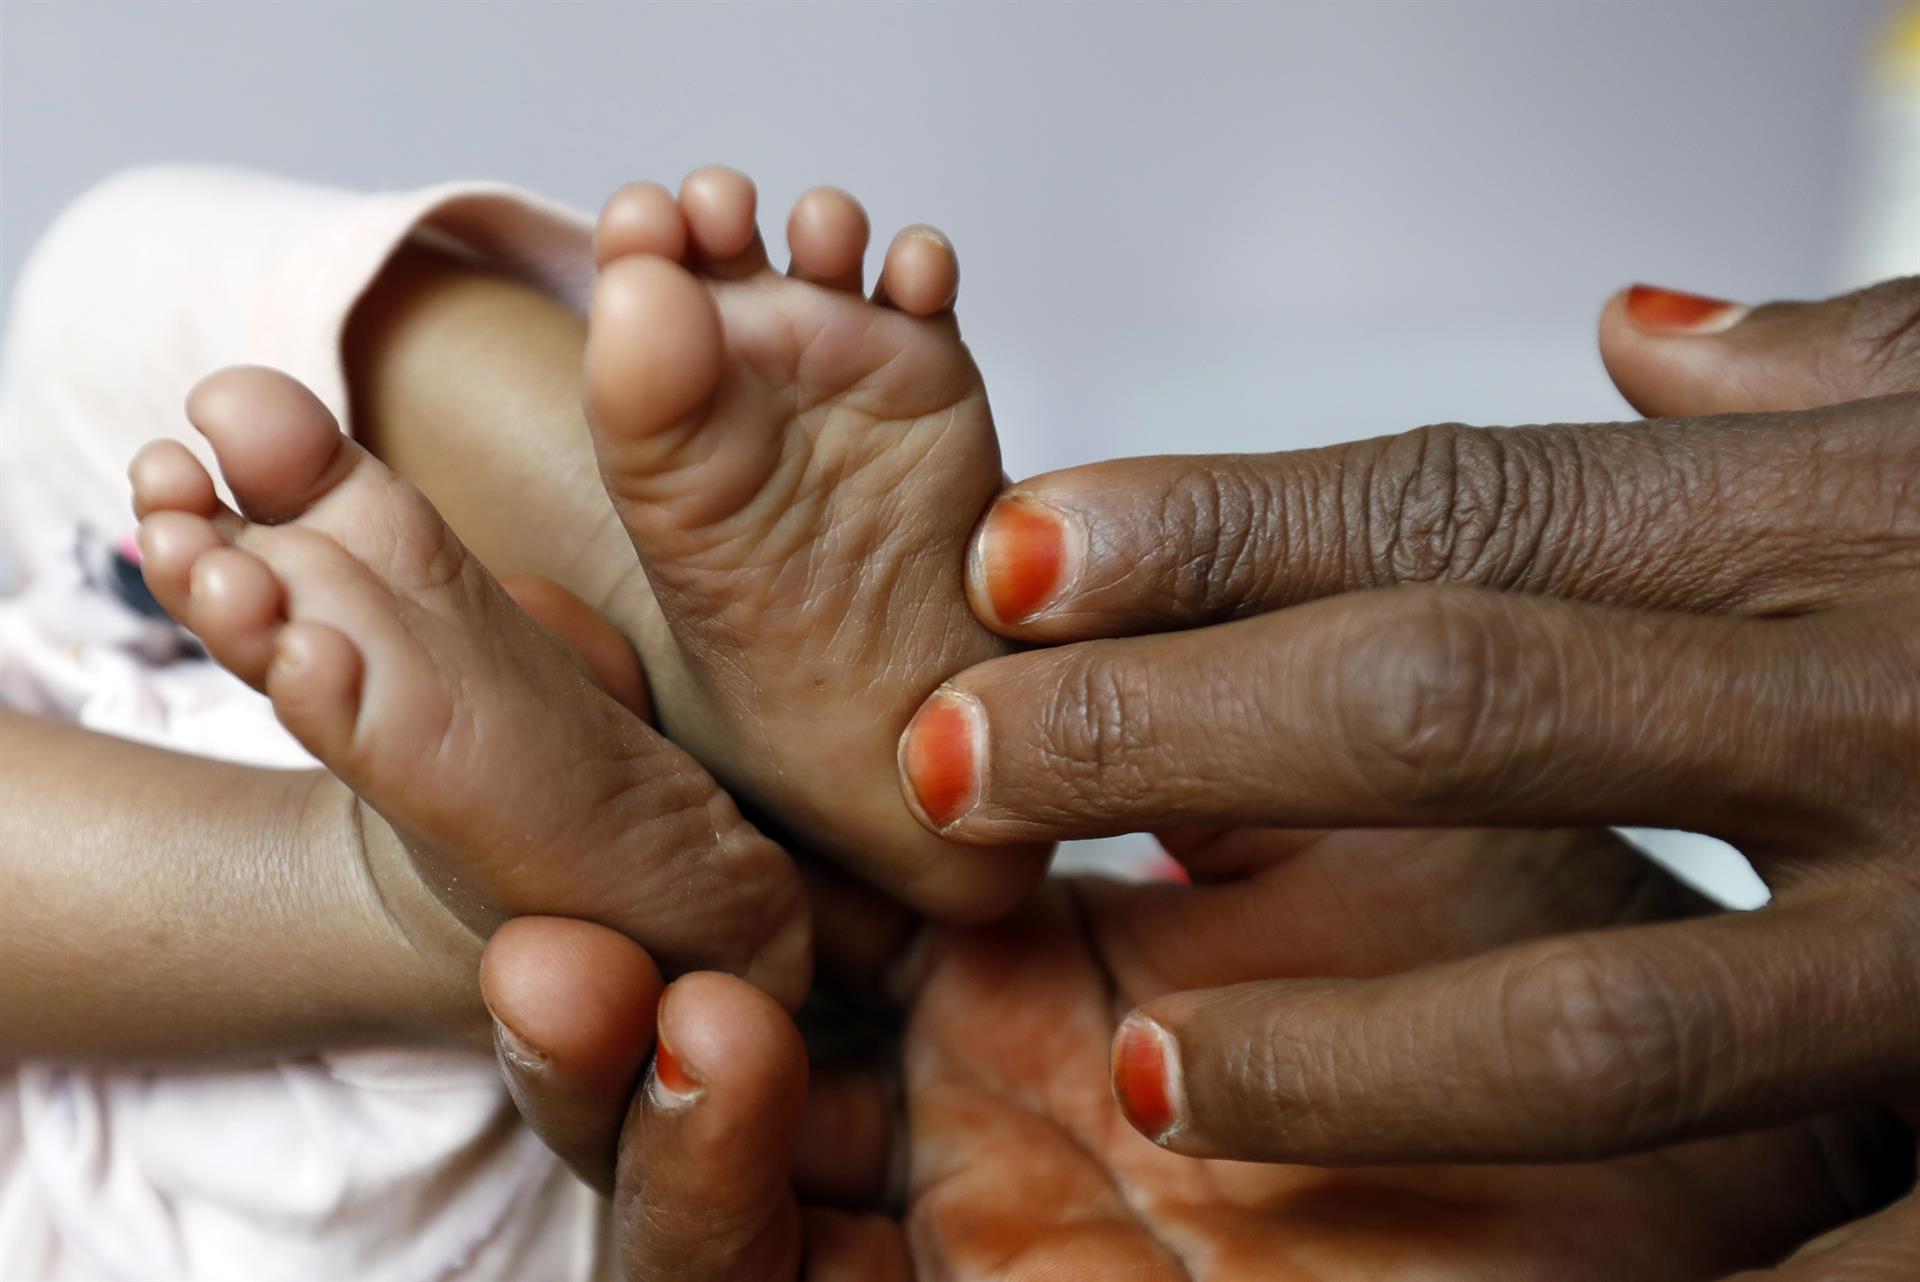 Una mujer sujeta las piernas de su hijo desnutrido en un hospital del Yemen. Efeagro/EPA/Yahya Arhab